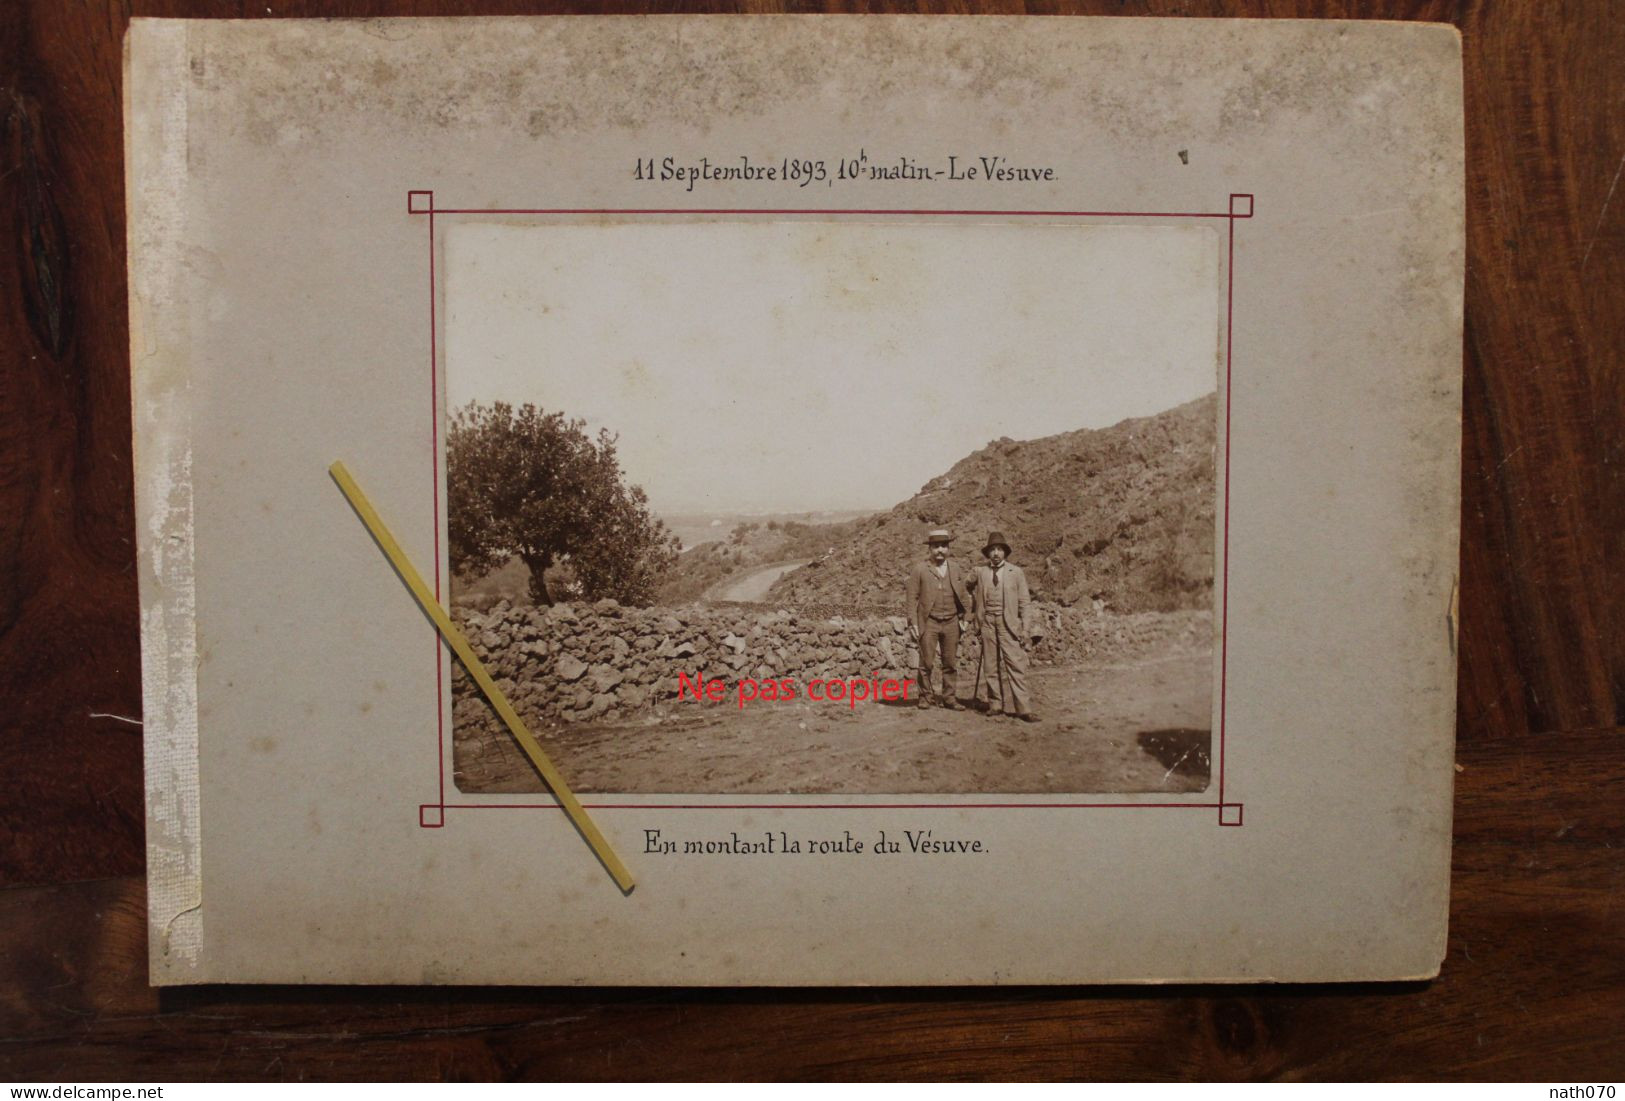 Photo 1893 Le Vésuve En Montant La Route Italie Tirage Albuminé Albumen Print Pompéi - Antiche (ante 1900)